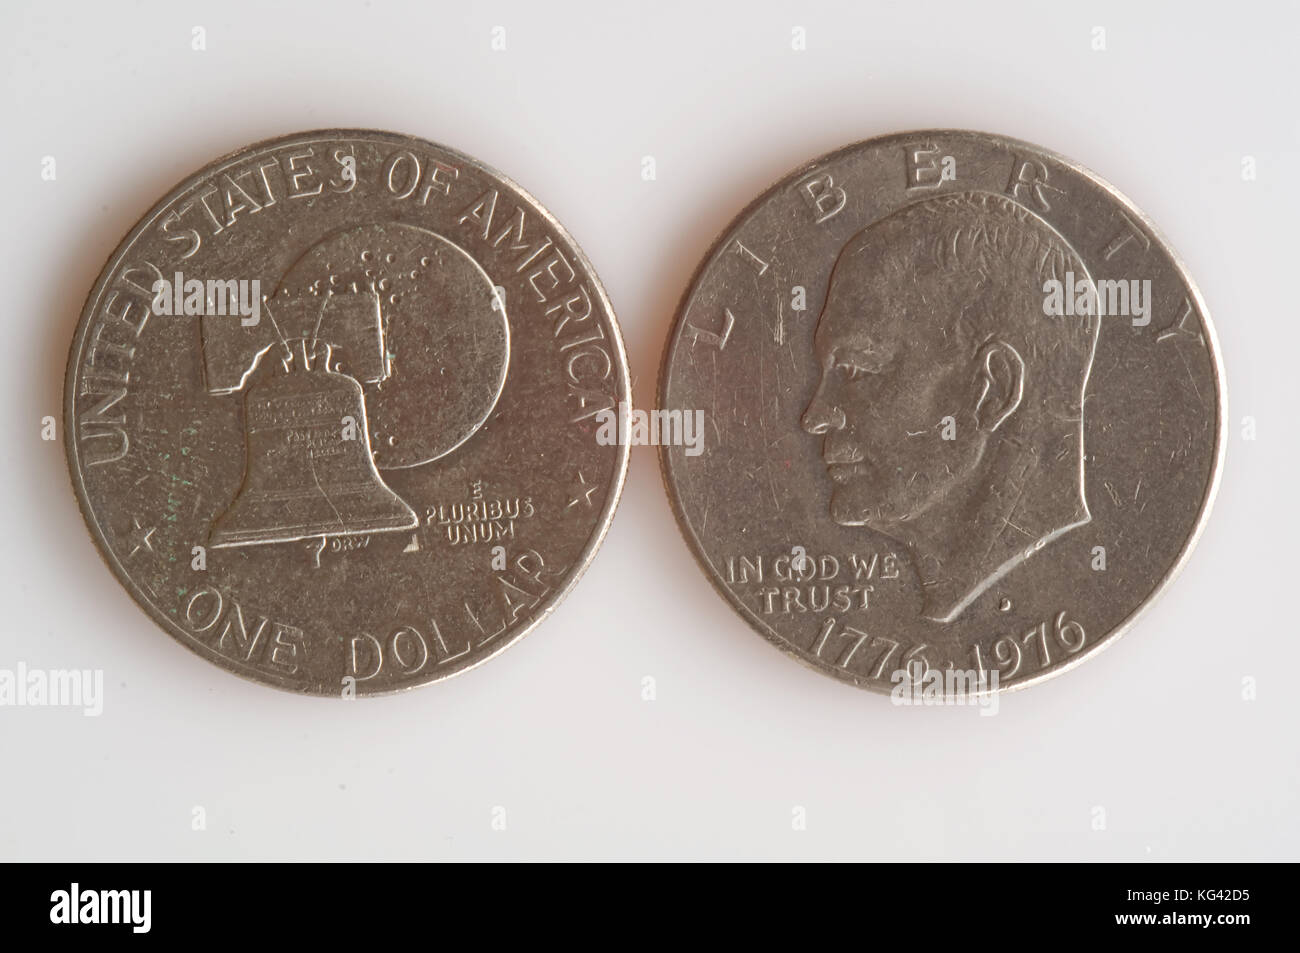 Das ist eine amerikanische 1976 US Eisenhower dollar Silver bicentennial Medaille auf hellem Hintergrund, sowohl der Kopf und der Schwanz Seiten. Stockfoto